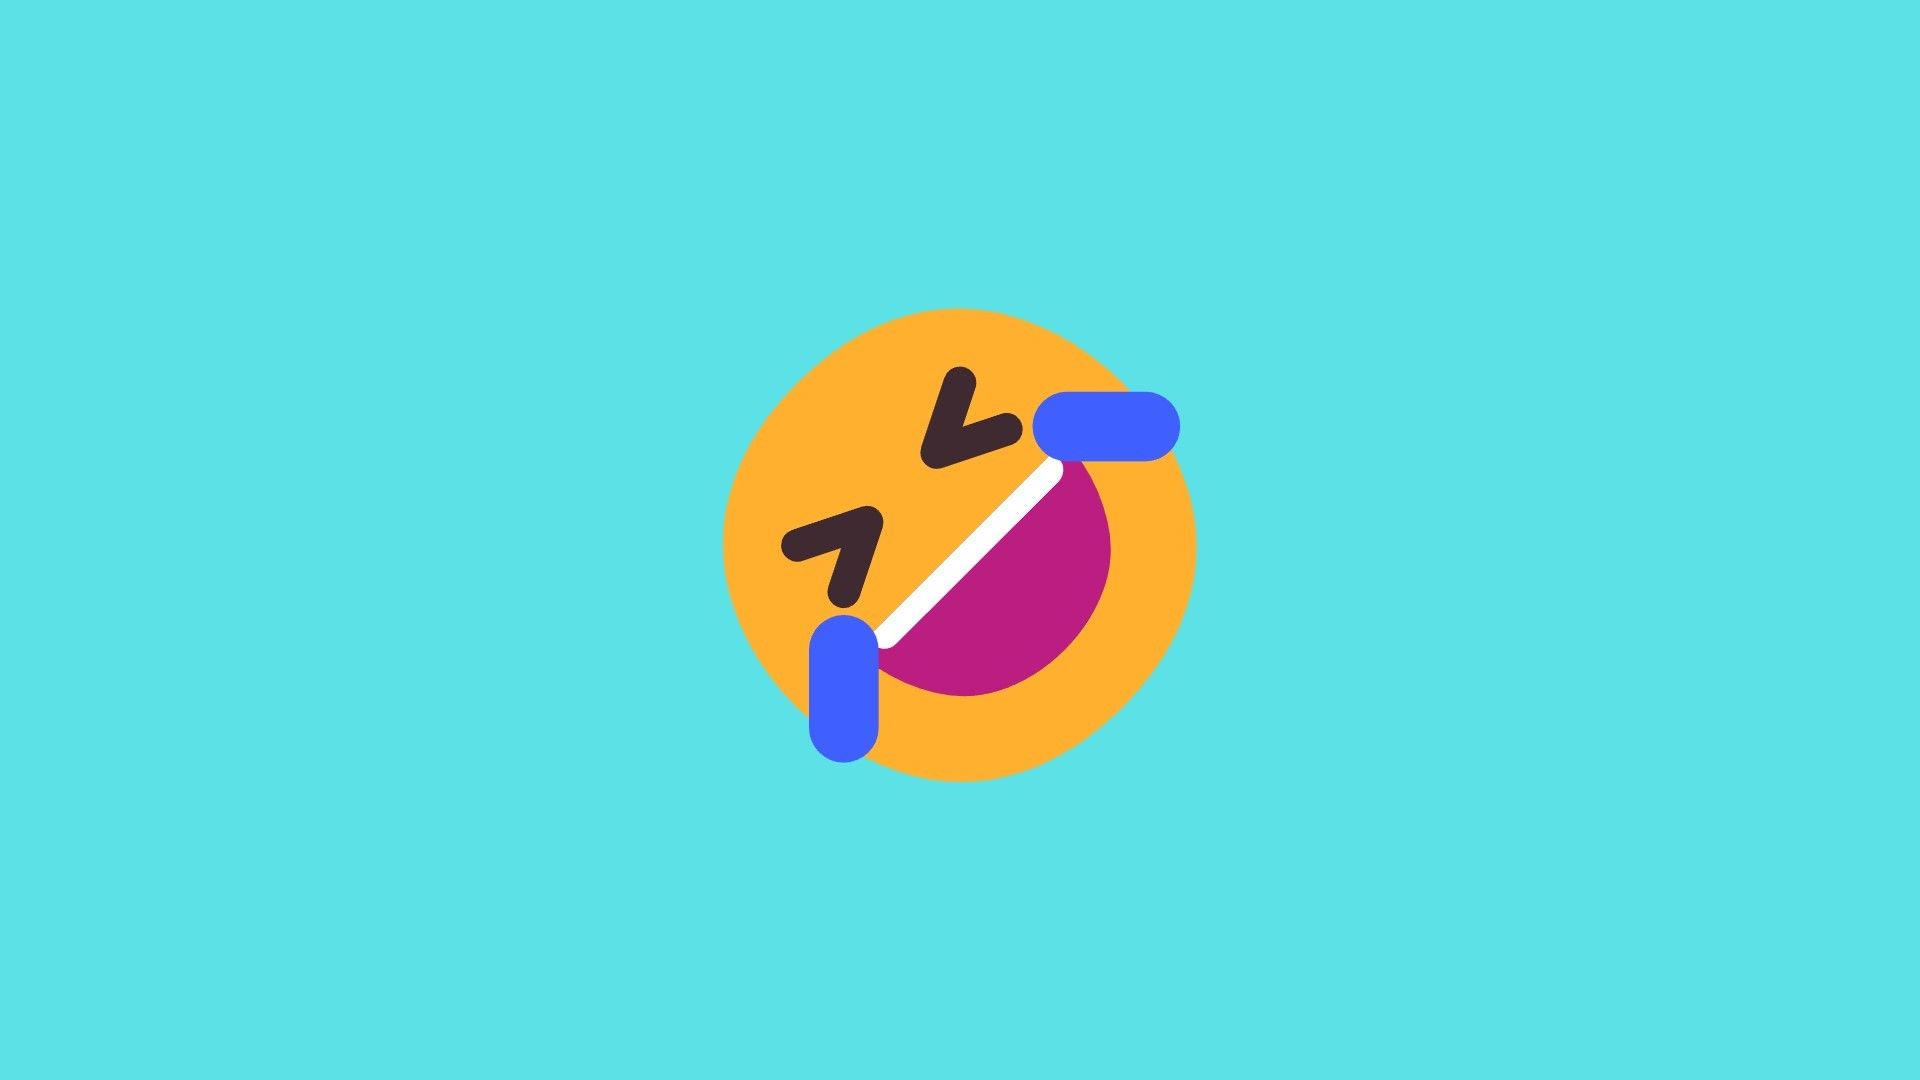 Emoji 3 Rolling on Floor Laughing